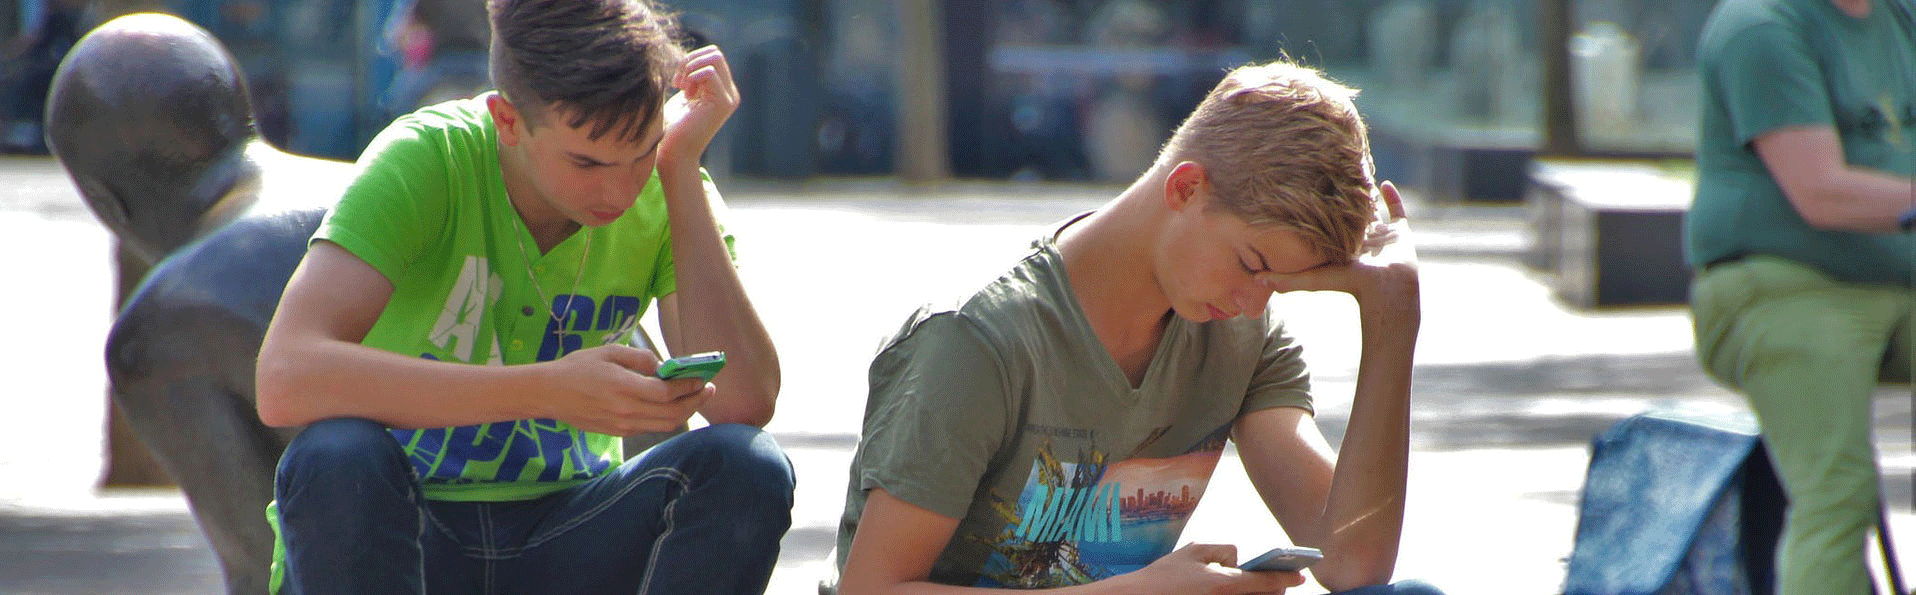 Ungdomar som spelar spel på sin mobil